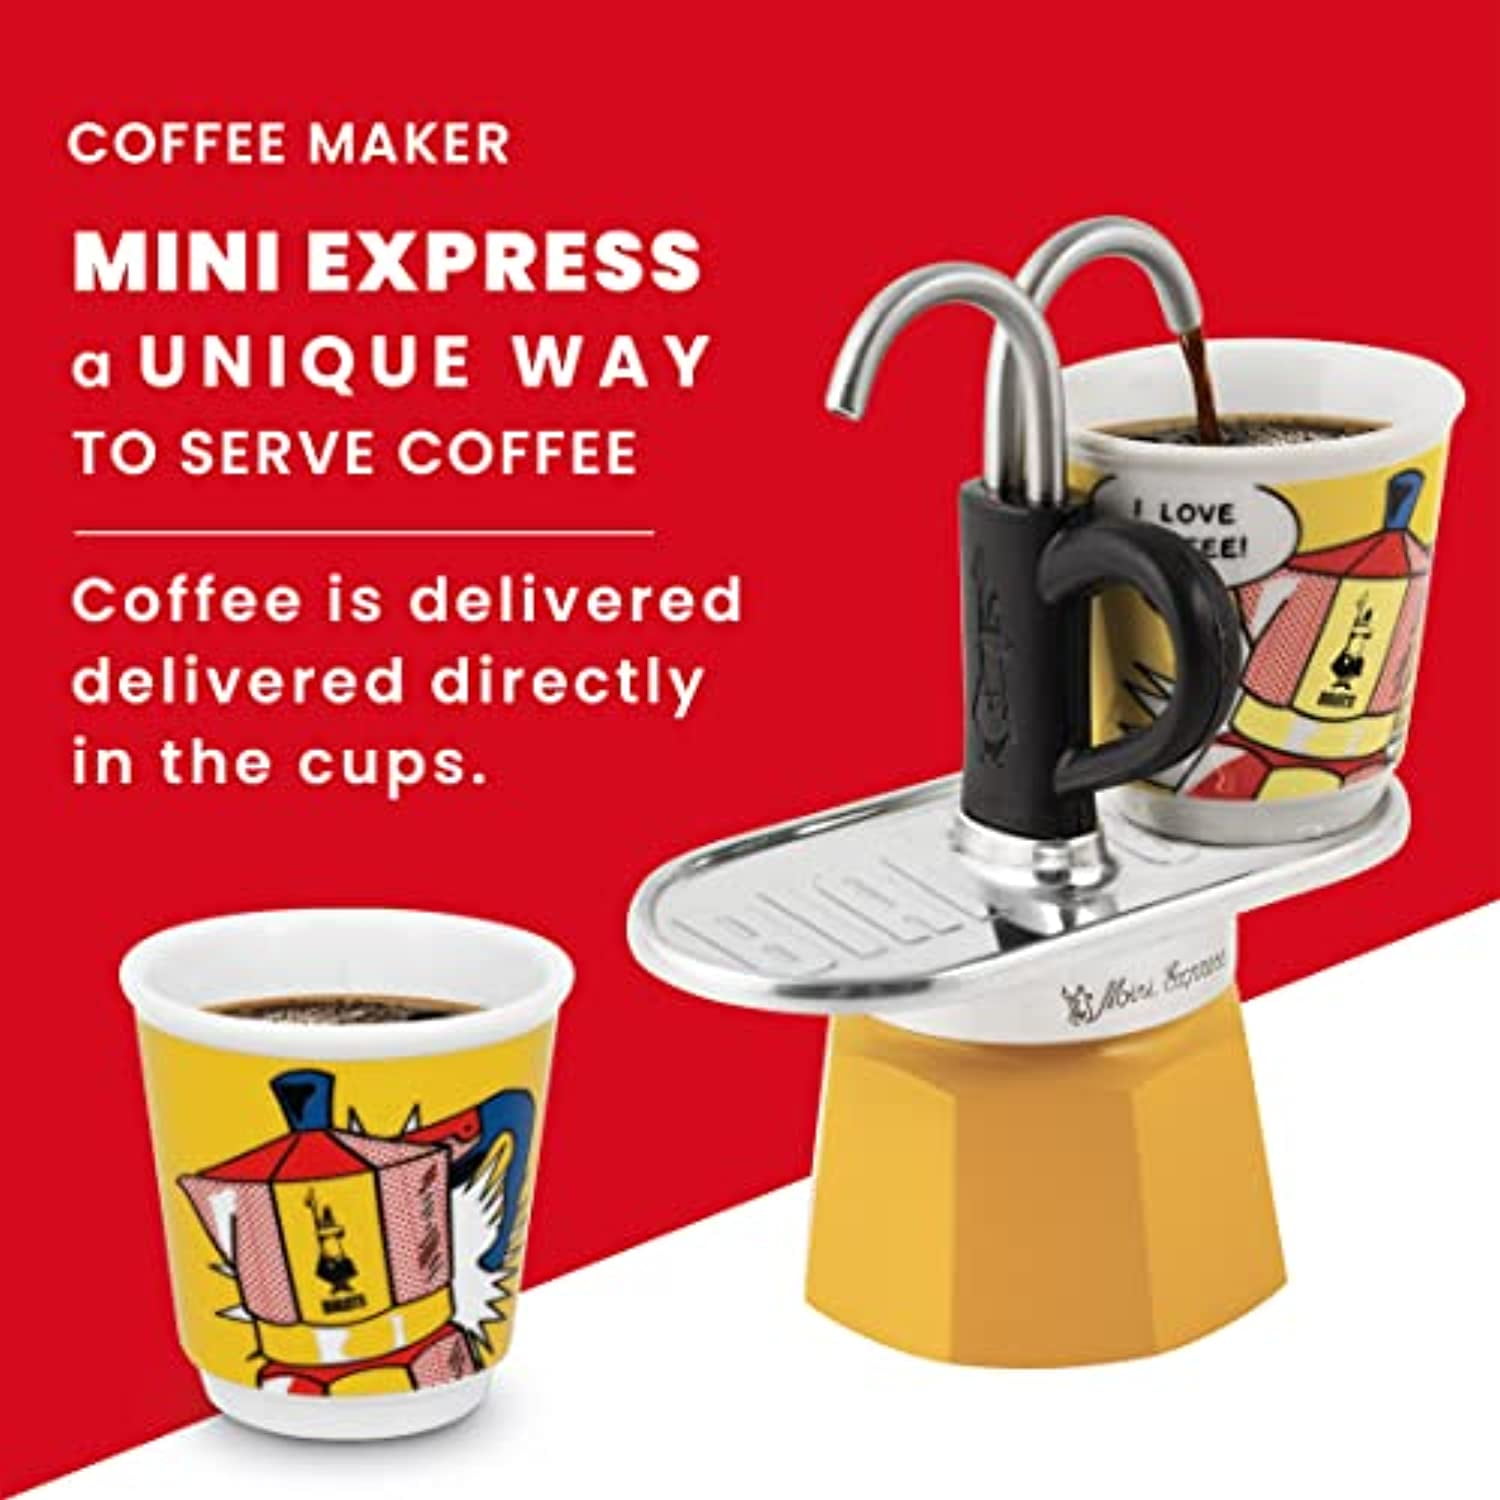 Mini Cafetera Gusto, Share a coffe for Mini, Correos Market